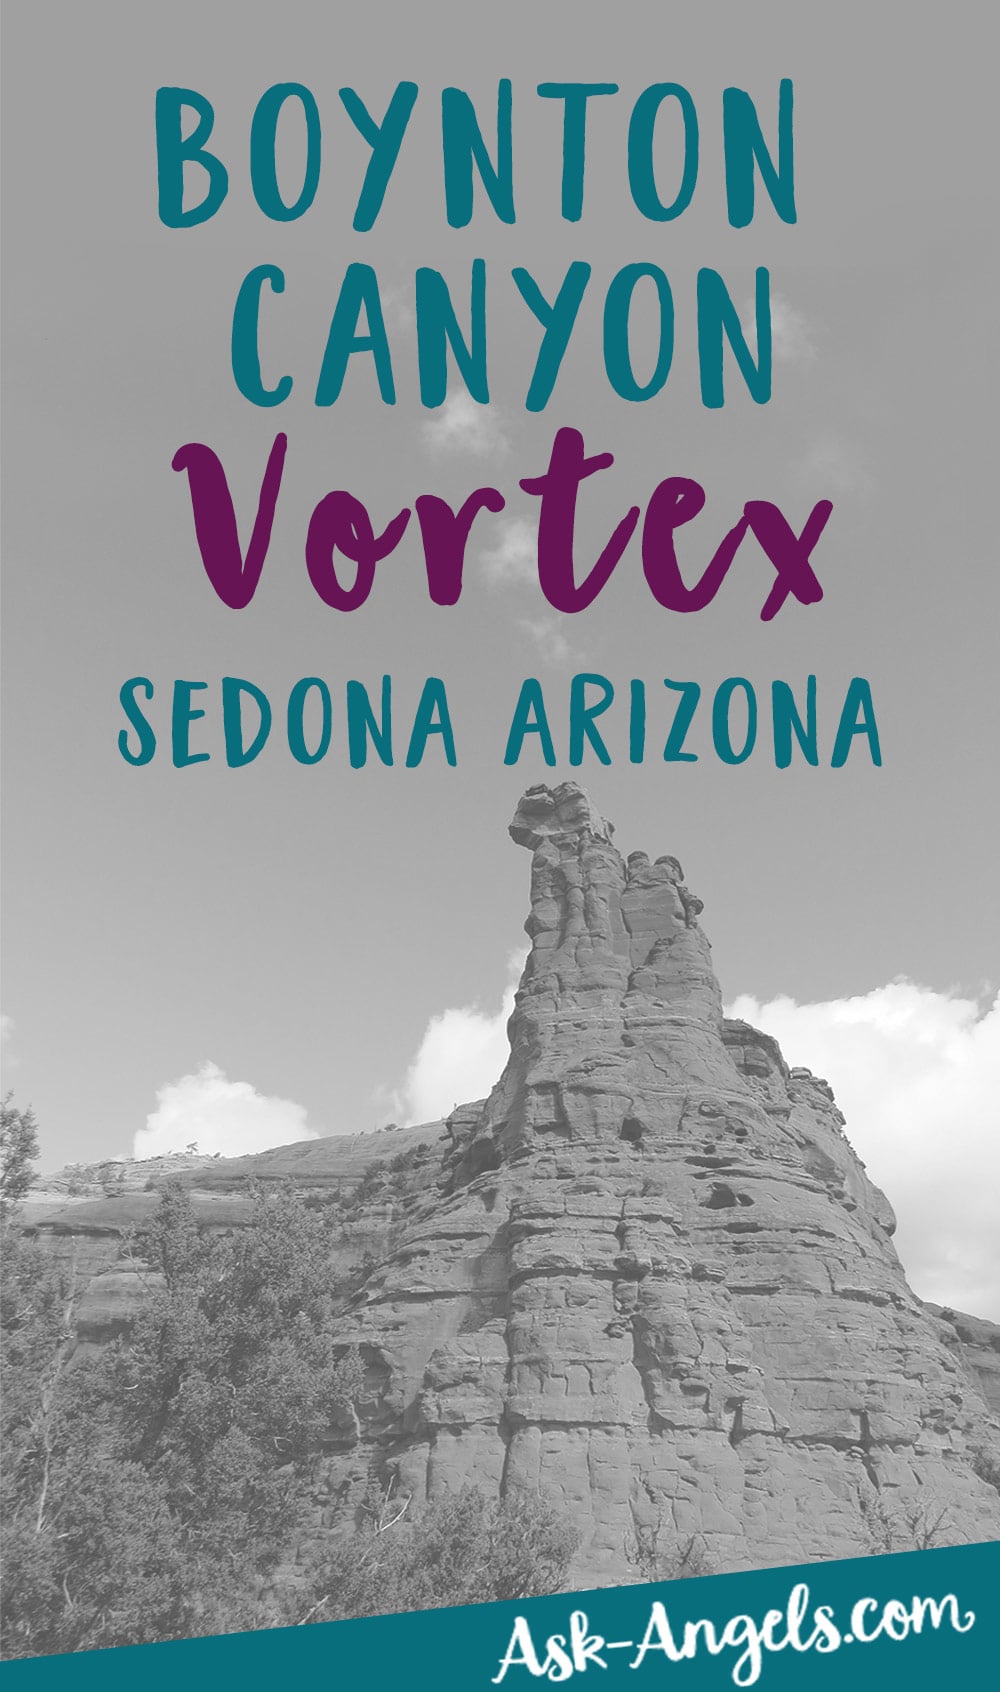 Boynton Canyon Vortex